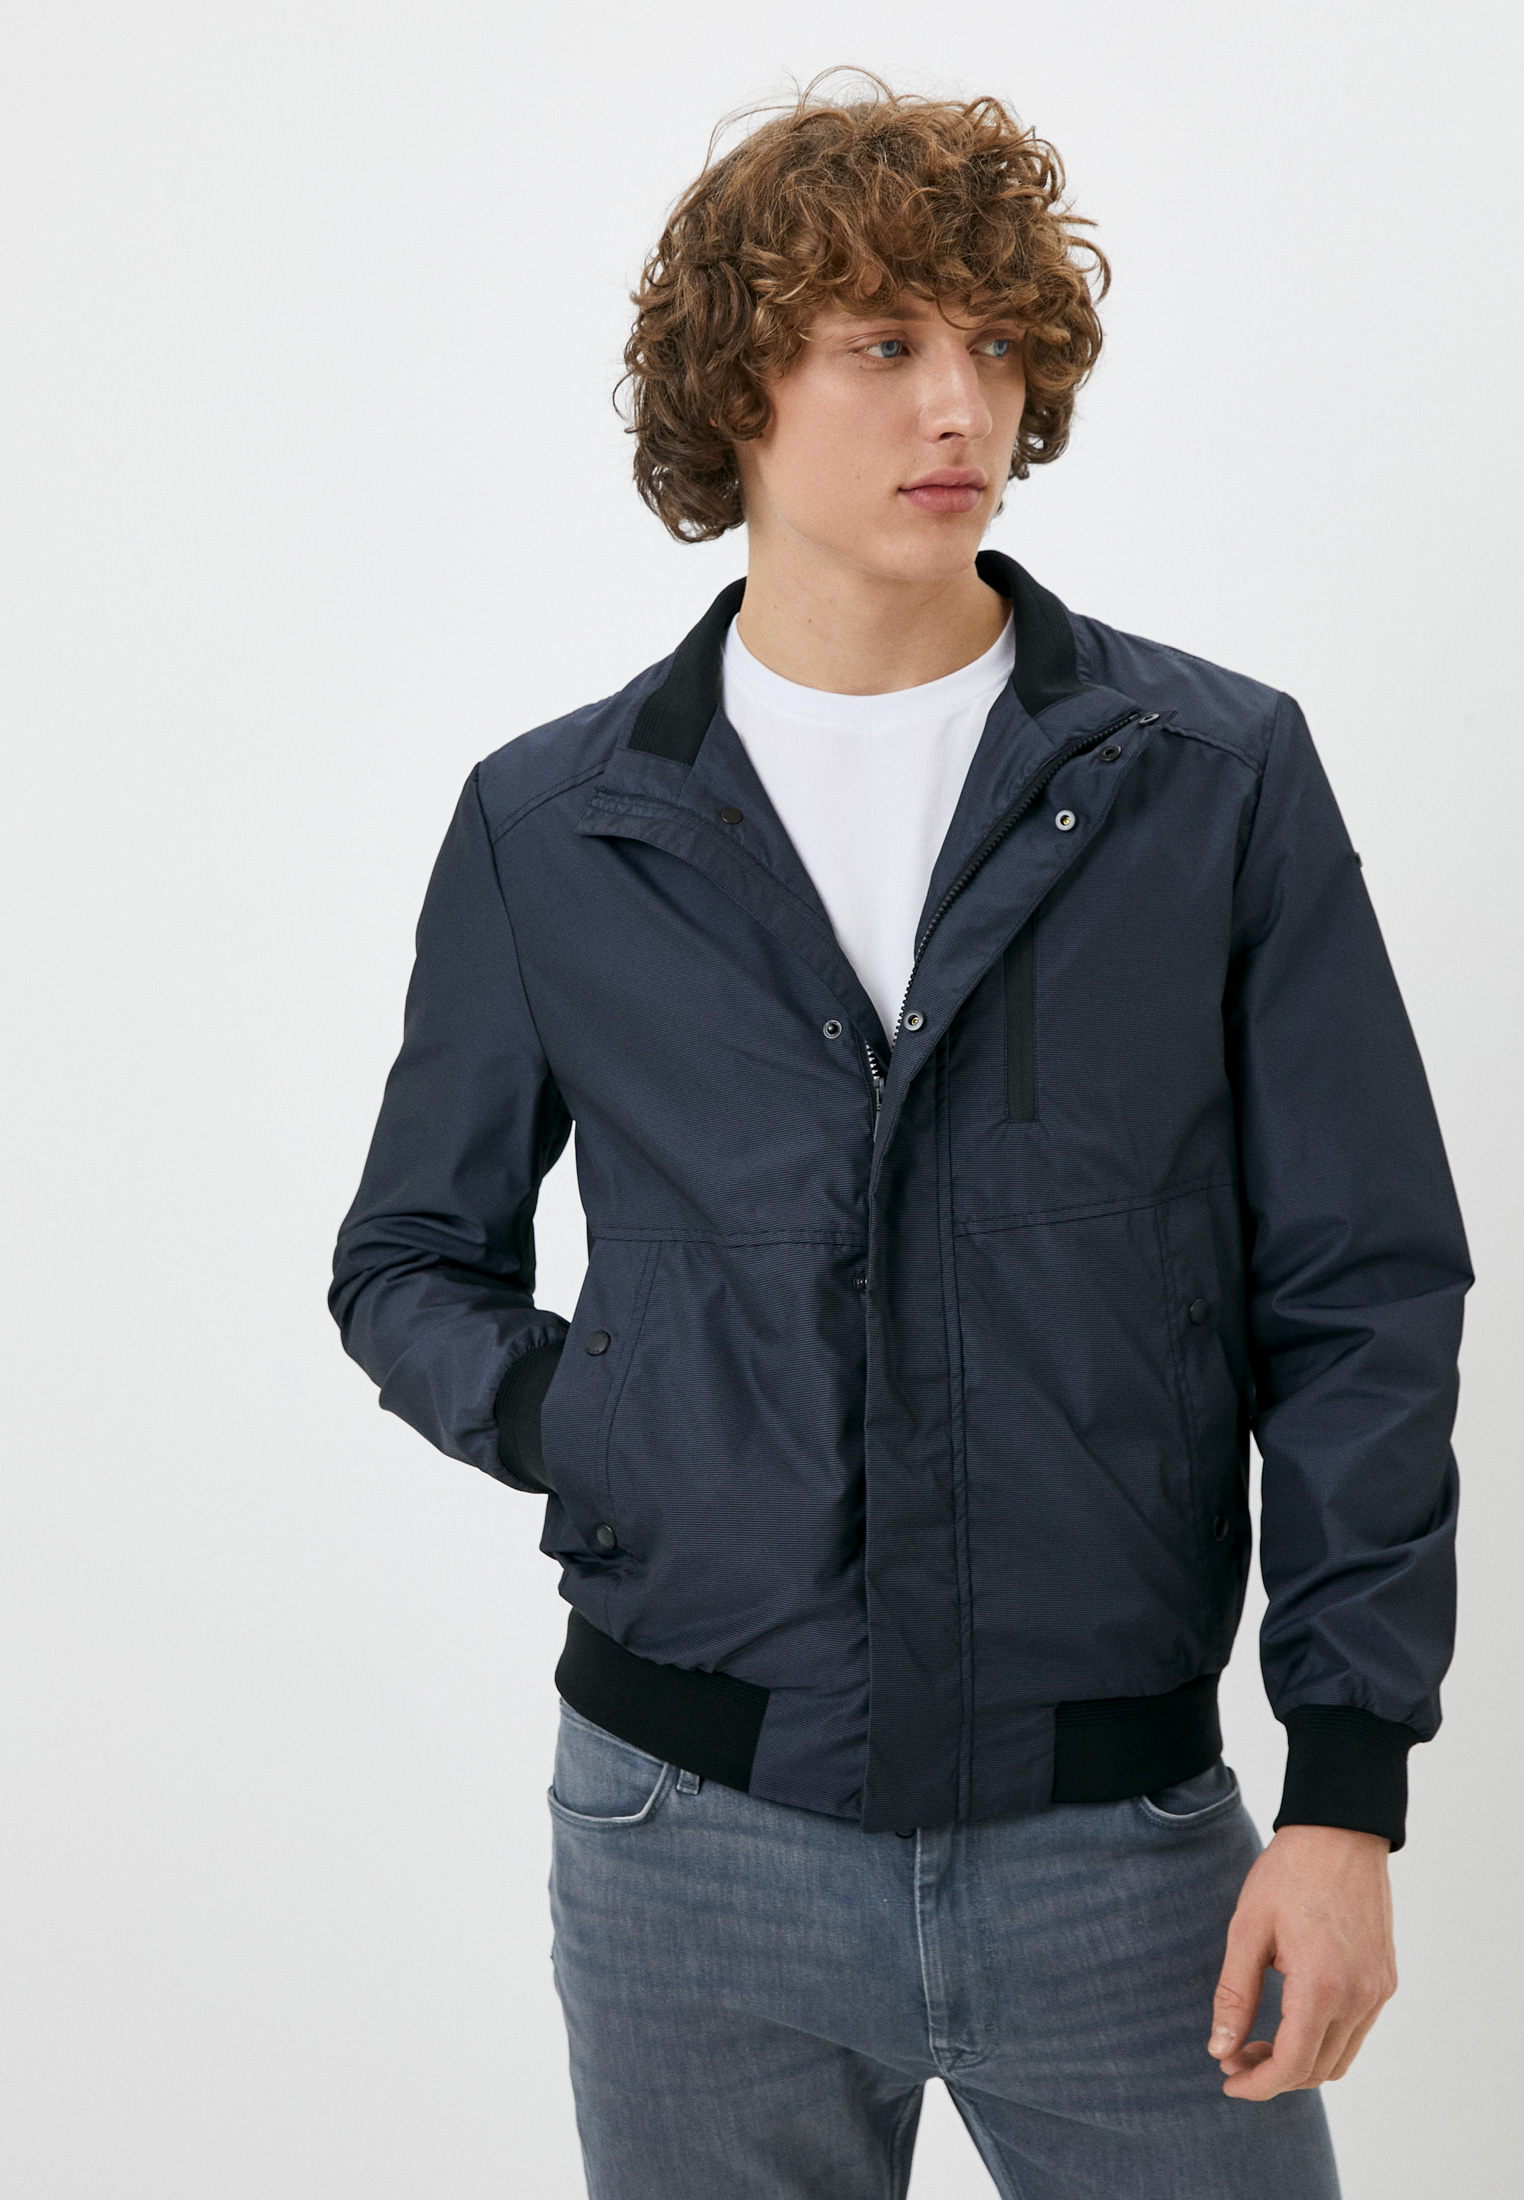 Куртка Geox купить за 702.00 р. в интернет-магазине Lamoda.by